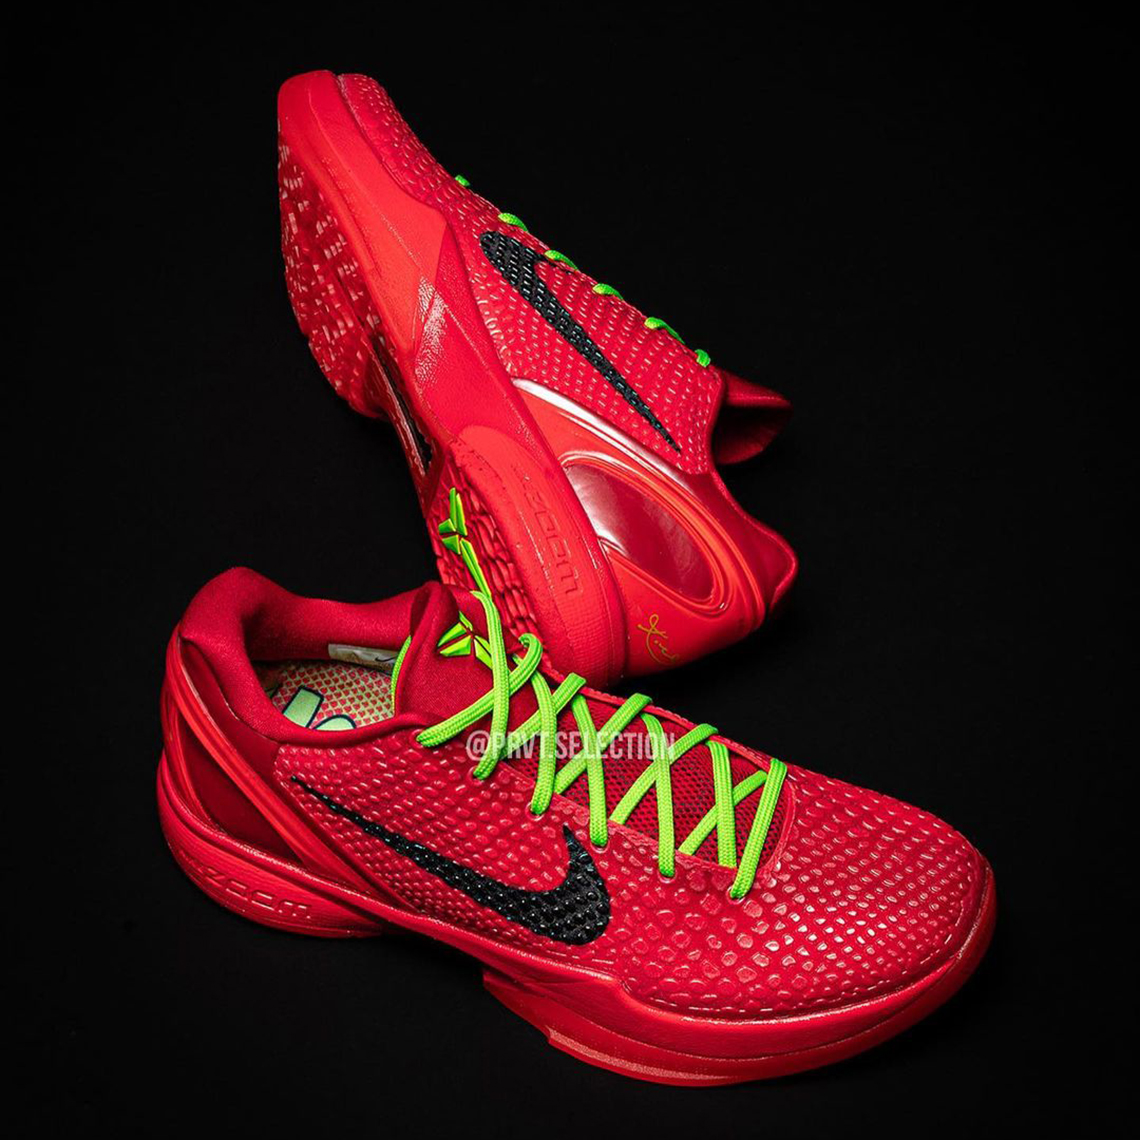 "Reverse Grinch" Nike Kobe 6 Protro Release Date FV4921600